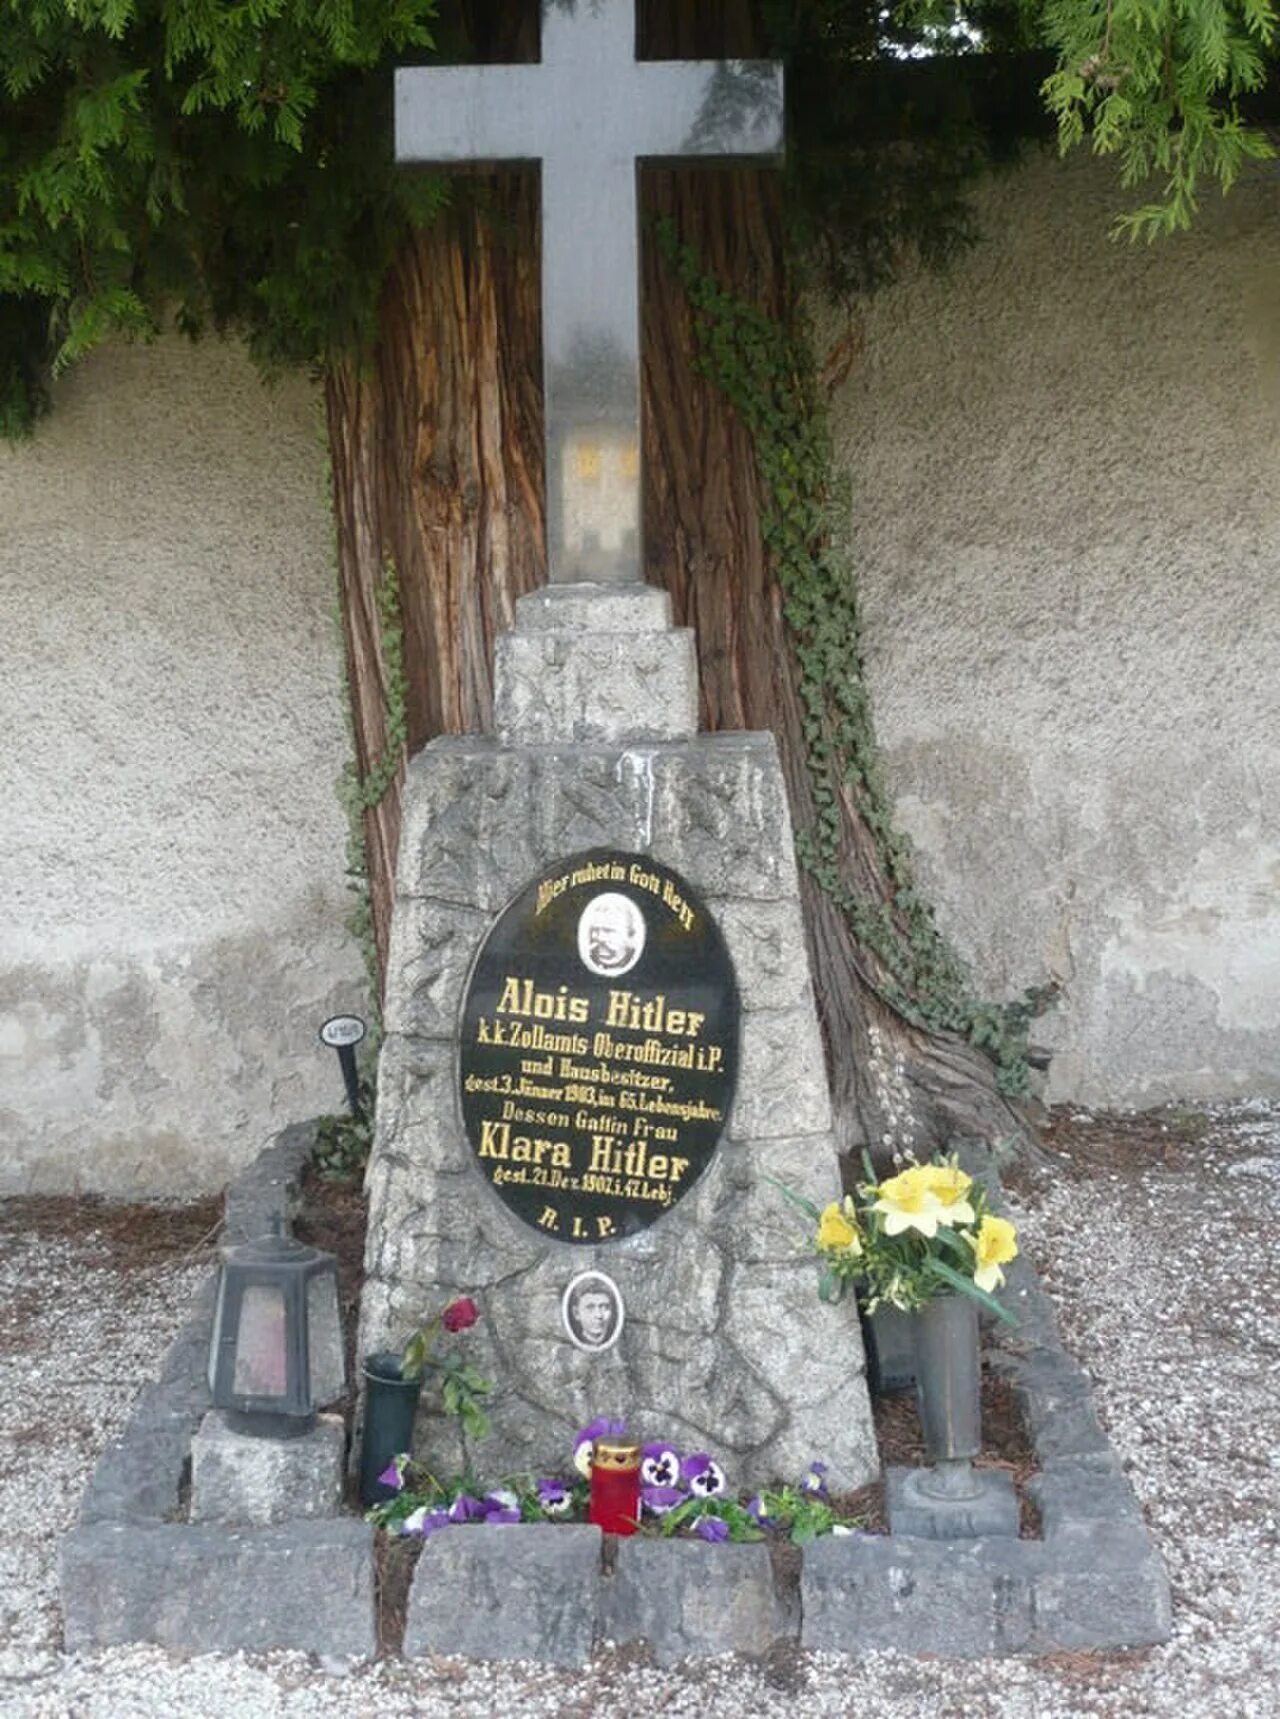 Леондинг могилы родителей Гитлера. Иоганн непомук хидлер